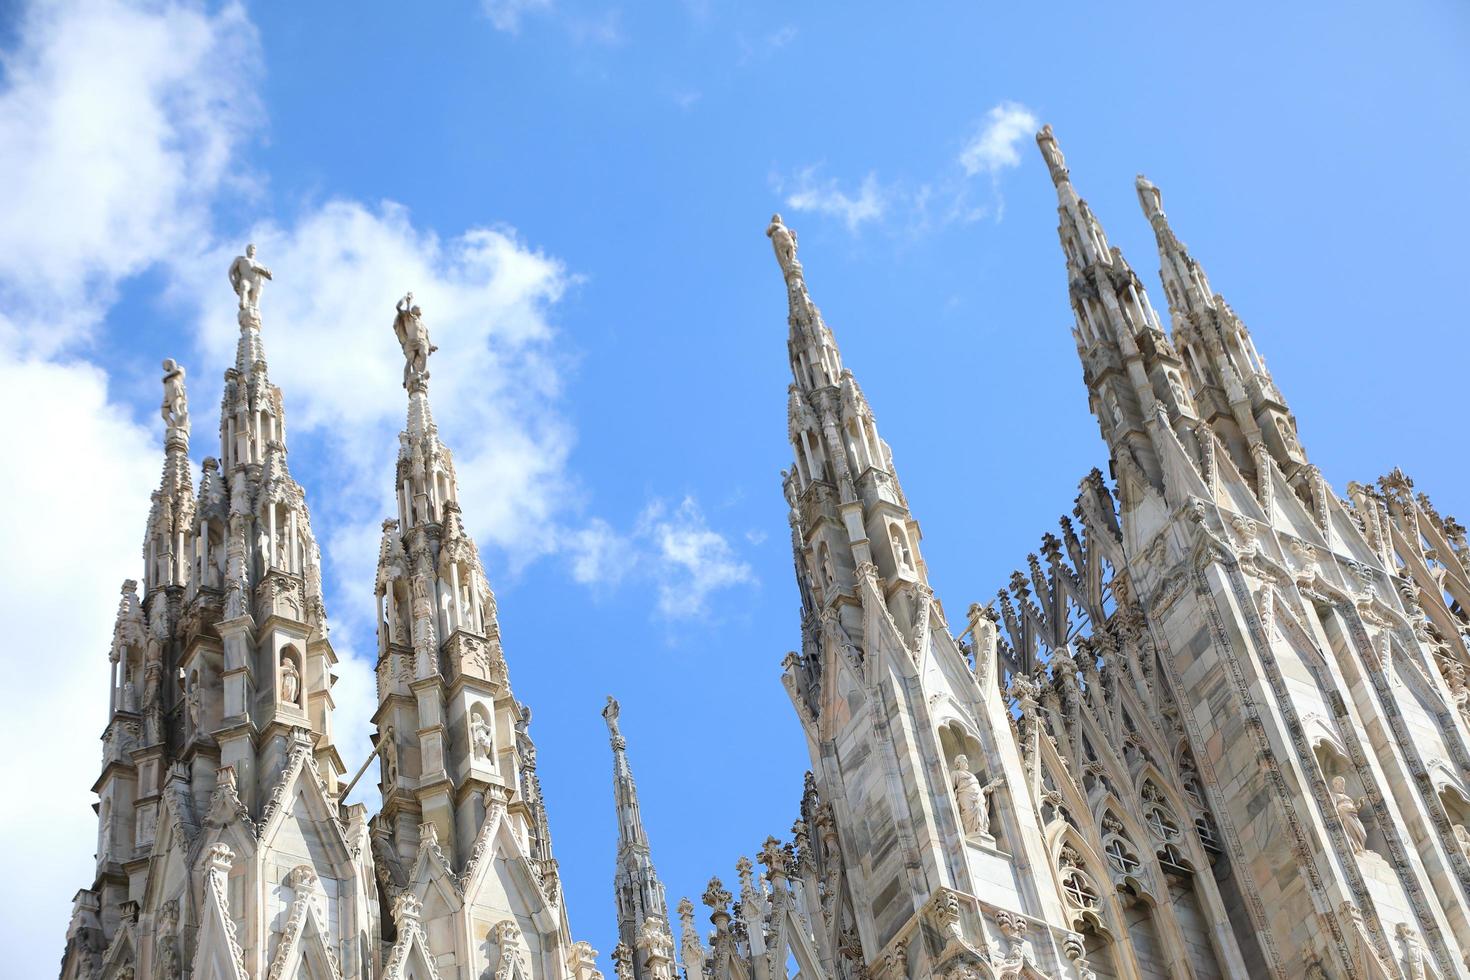 Milan Cathedral, Duomo di Milano, Italy photo